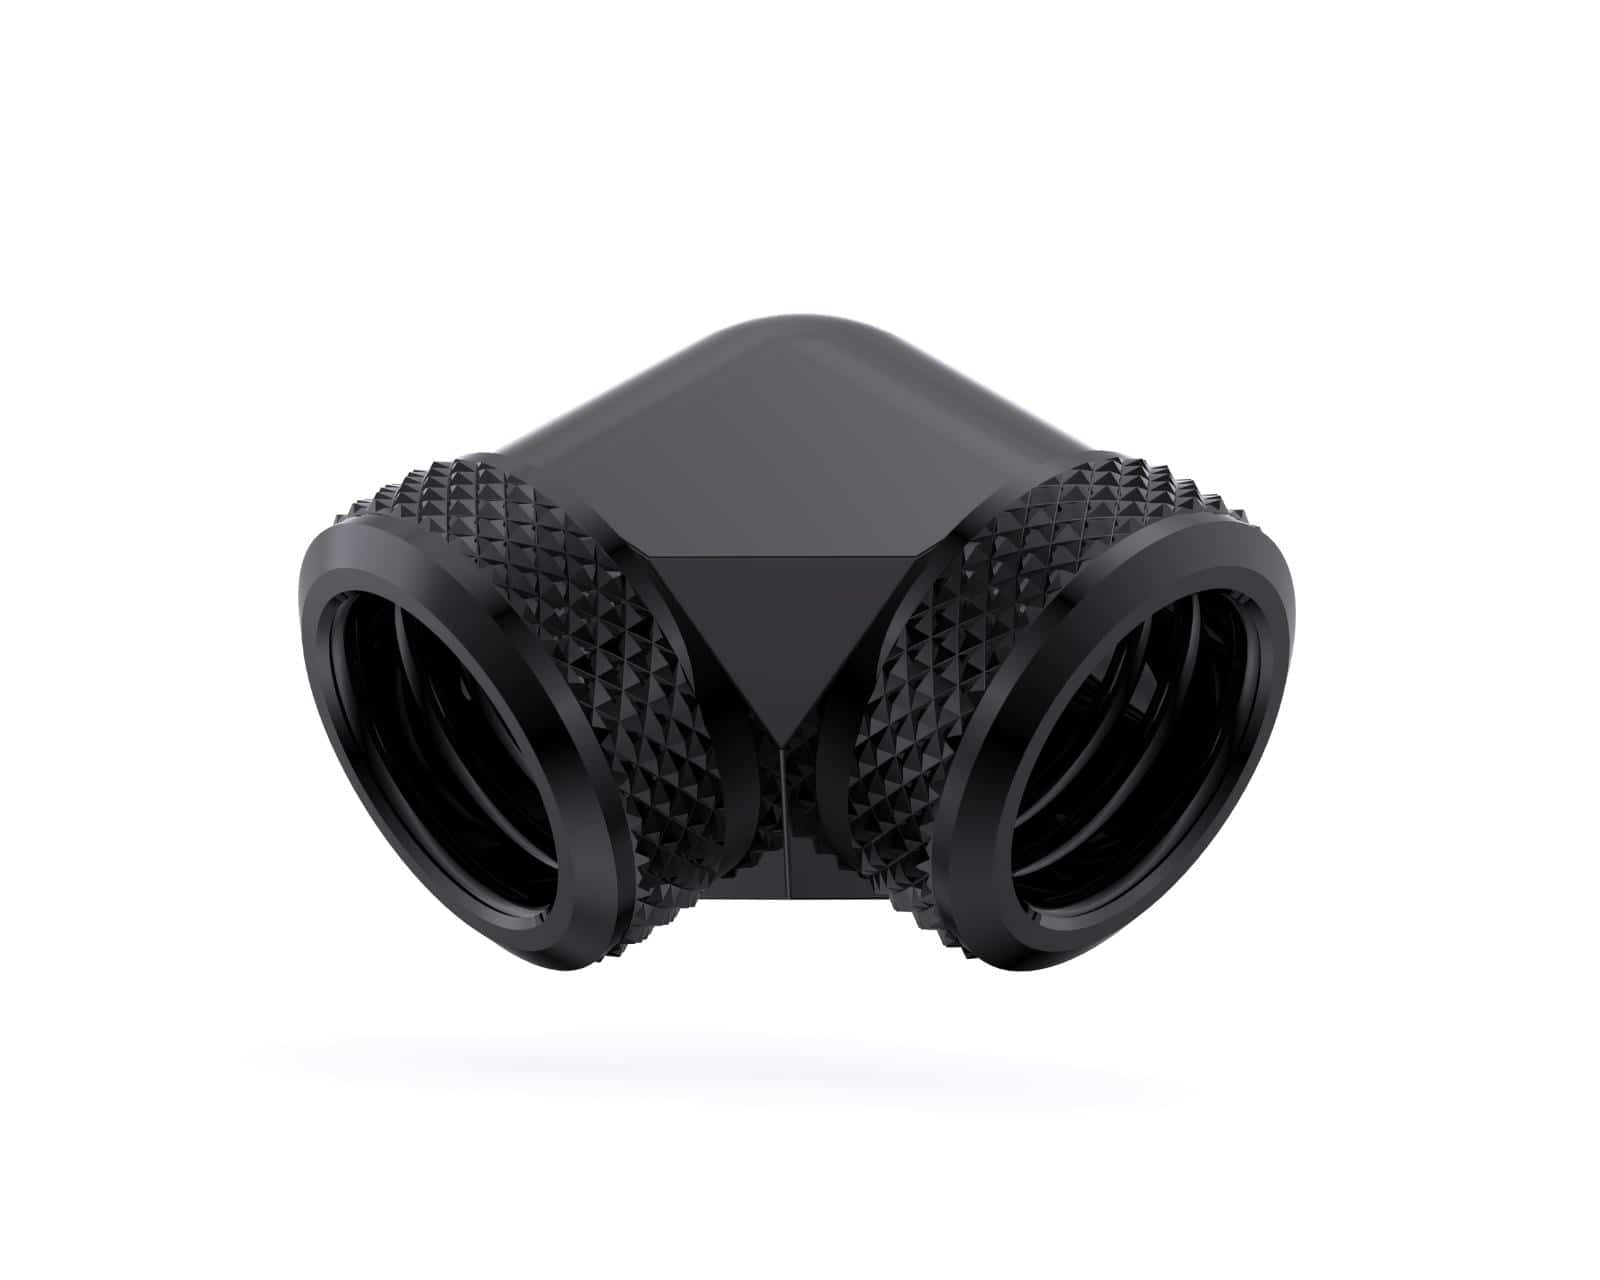 Bykski 16mm OD Rigid Tubing 90 Degree Fitting (CC-DB90L16-X) - Black